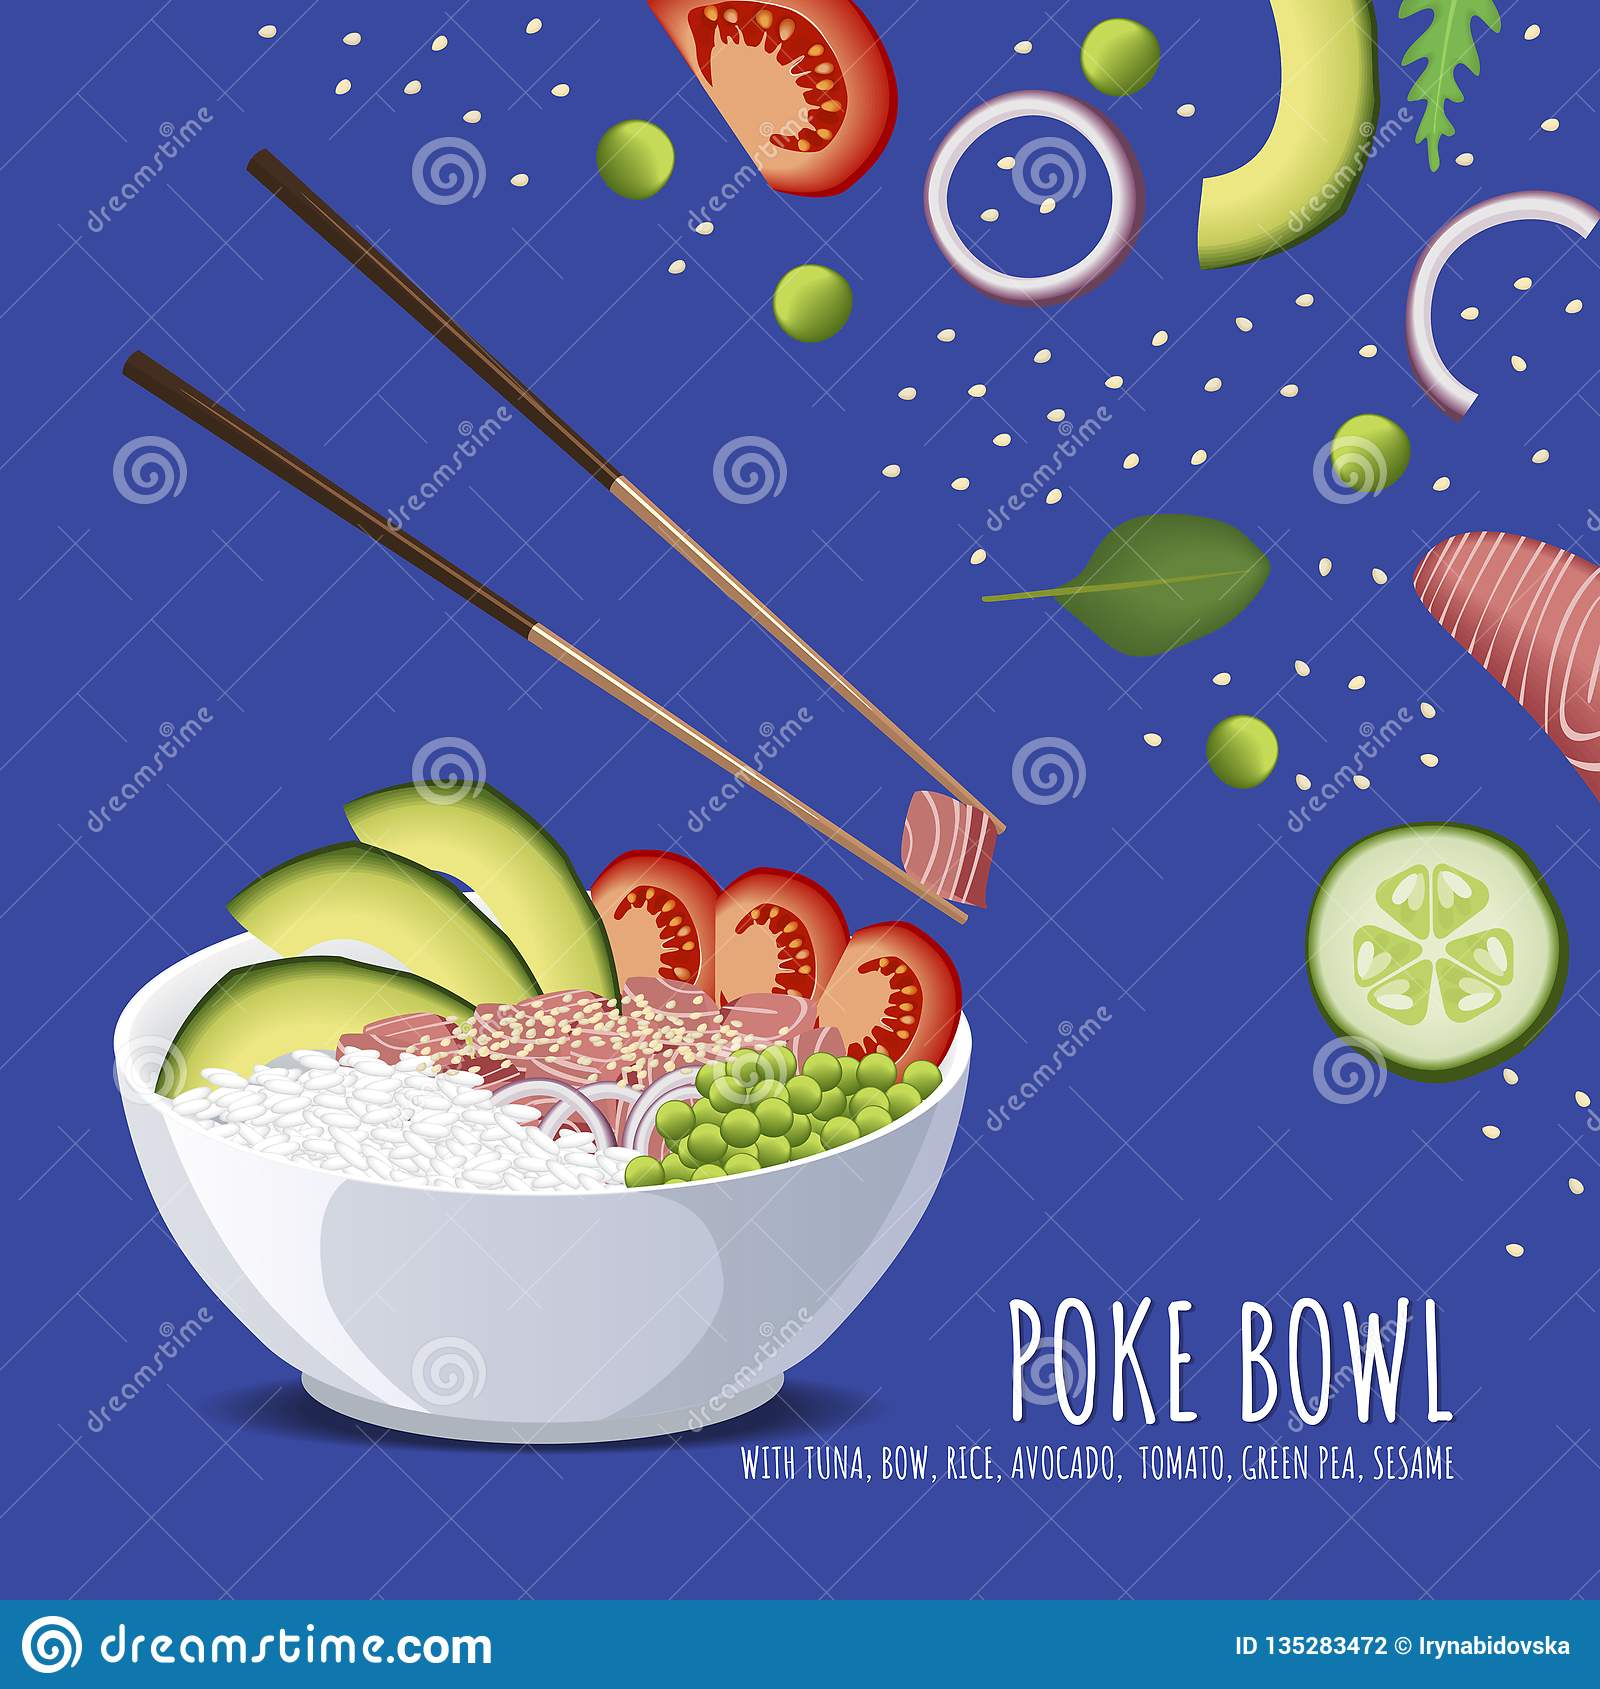 Hawaiian Poke Tuna Bowl, With Bow, Rice, Avocado, Tomato Pertaining To Hawaiian Menu Template